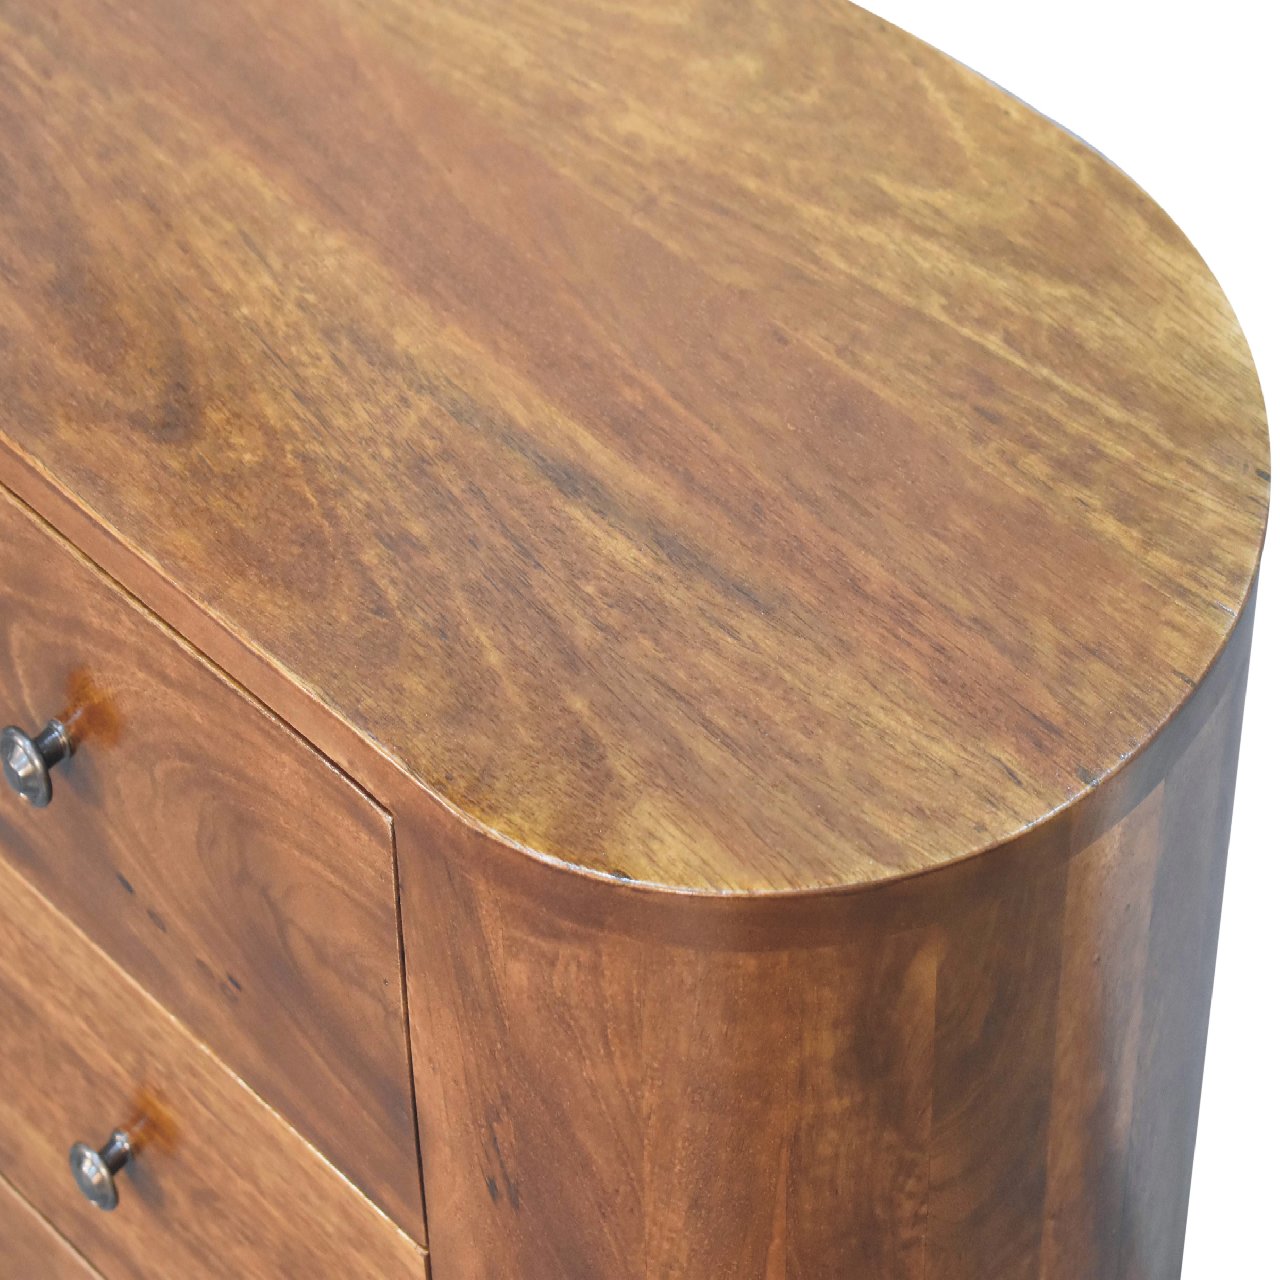 STOCKWELL Mini Chestnut 3 Drawer Cabinet  | MalletandPlane.com